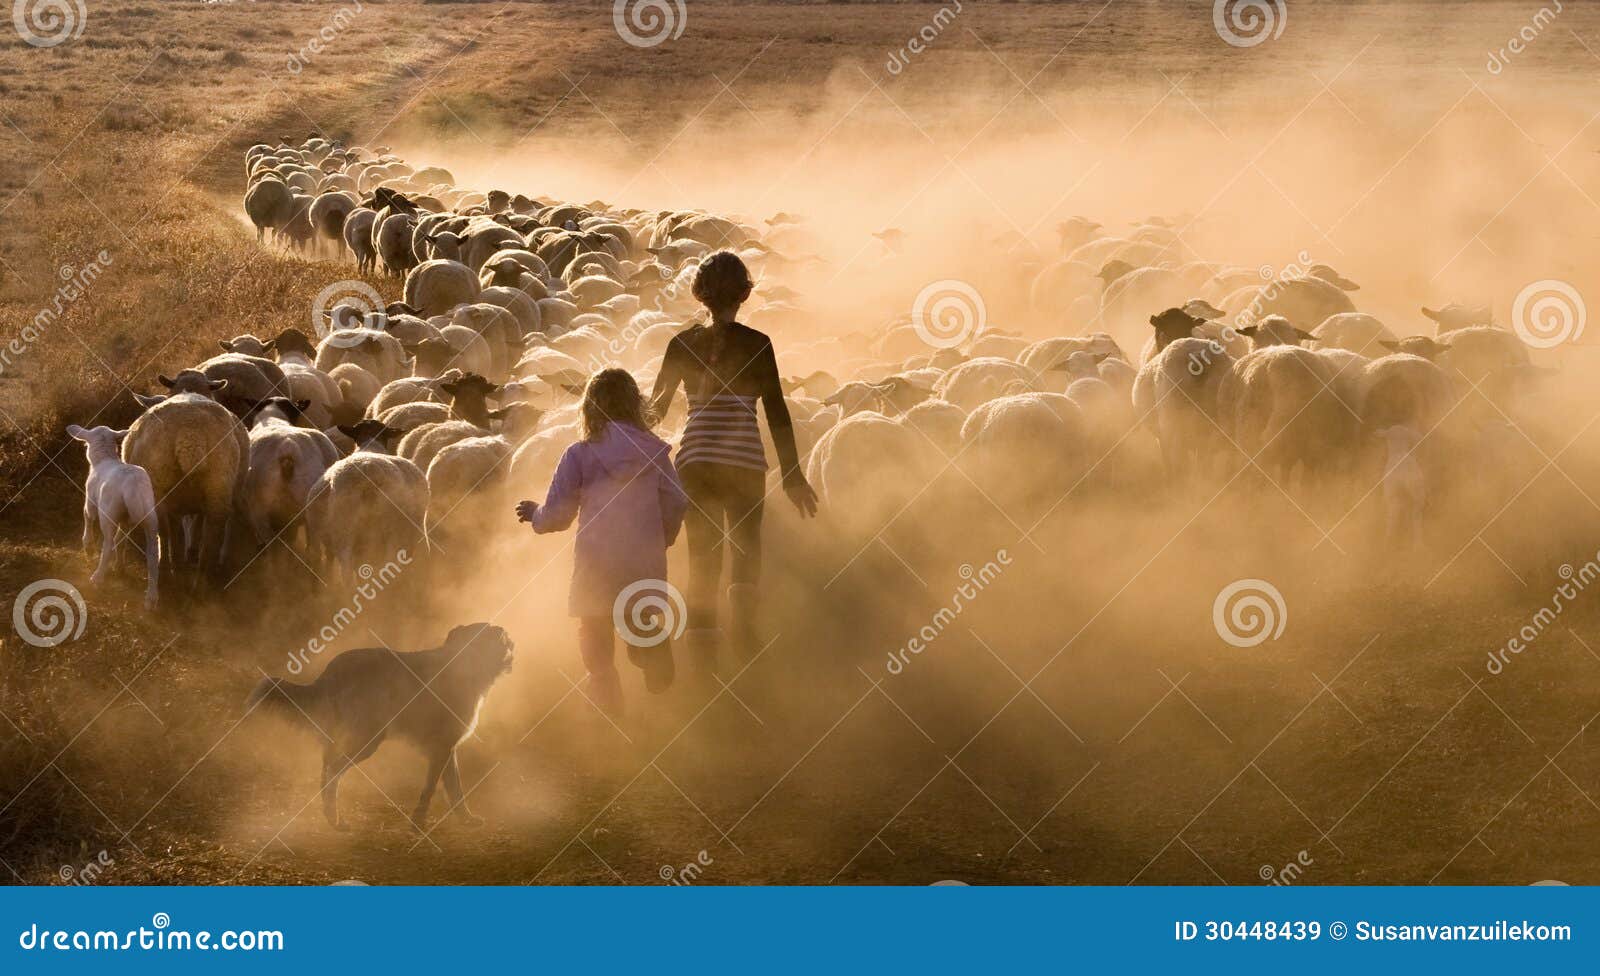 children herding the sheep